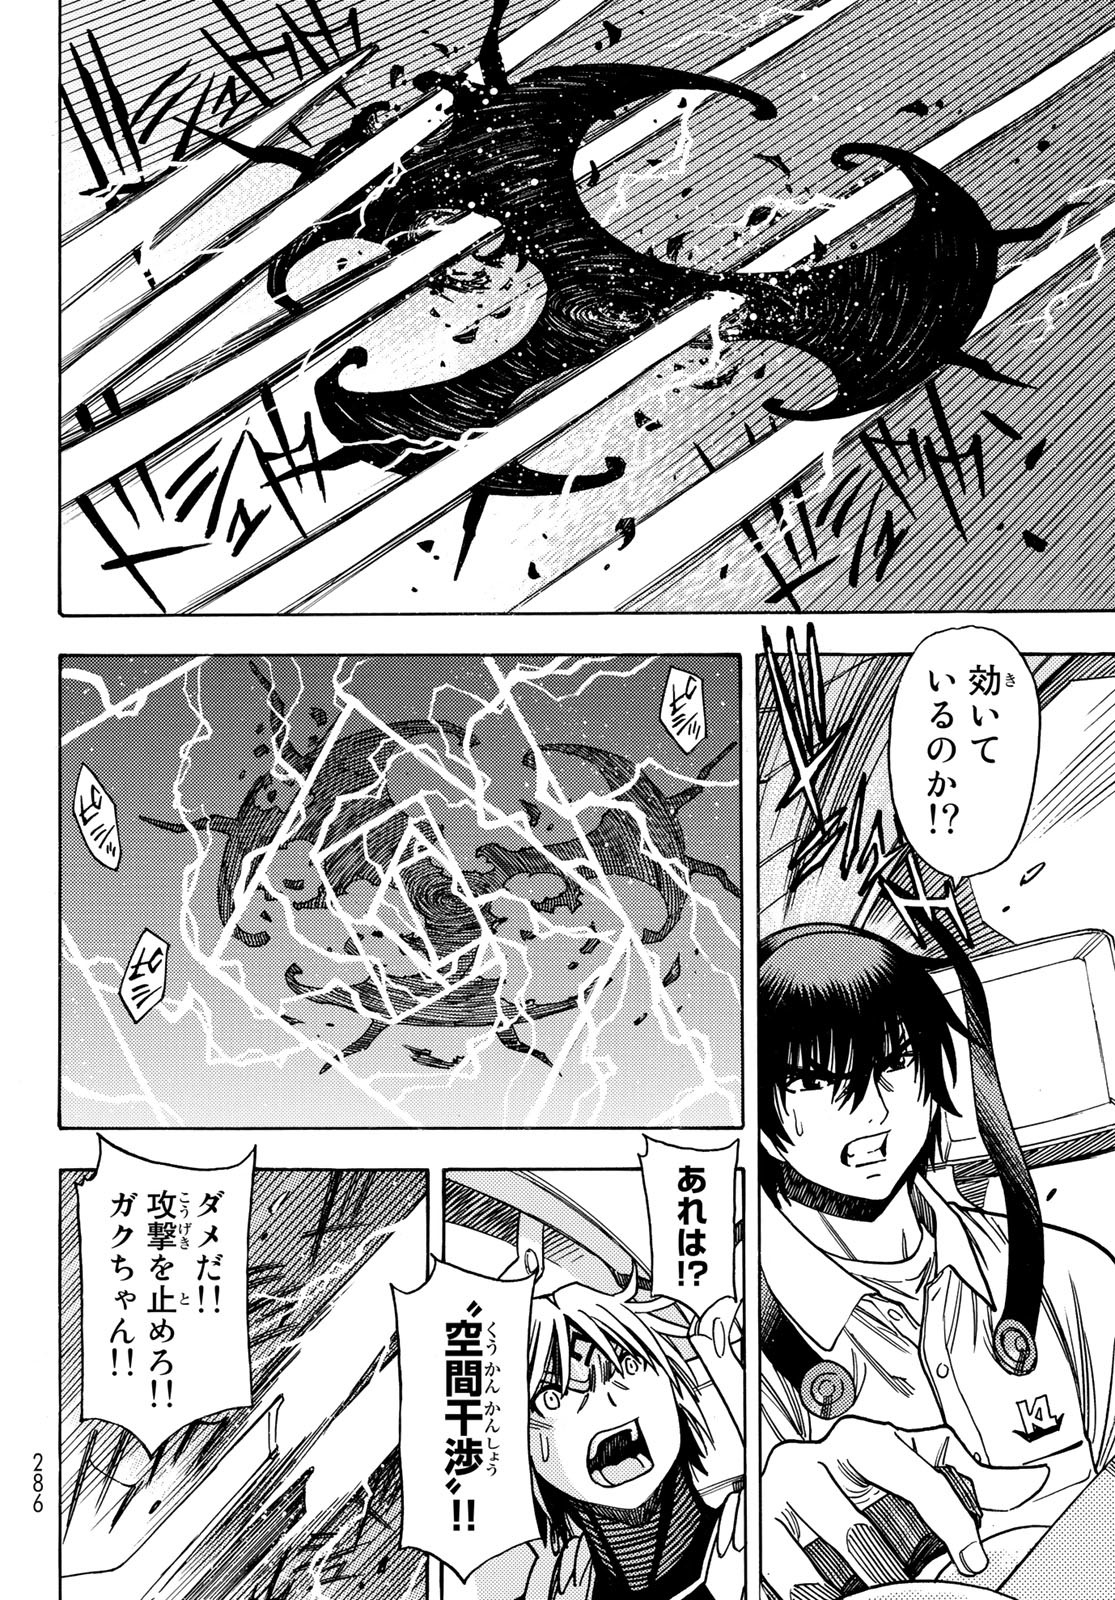 Mugou no Schnell Gear: Chikyuugai Kisouka AI - Chapter 45 - Page 22